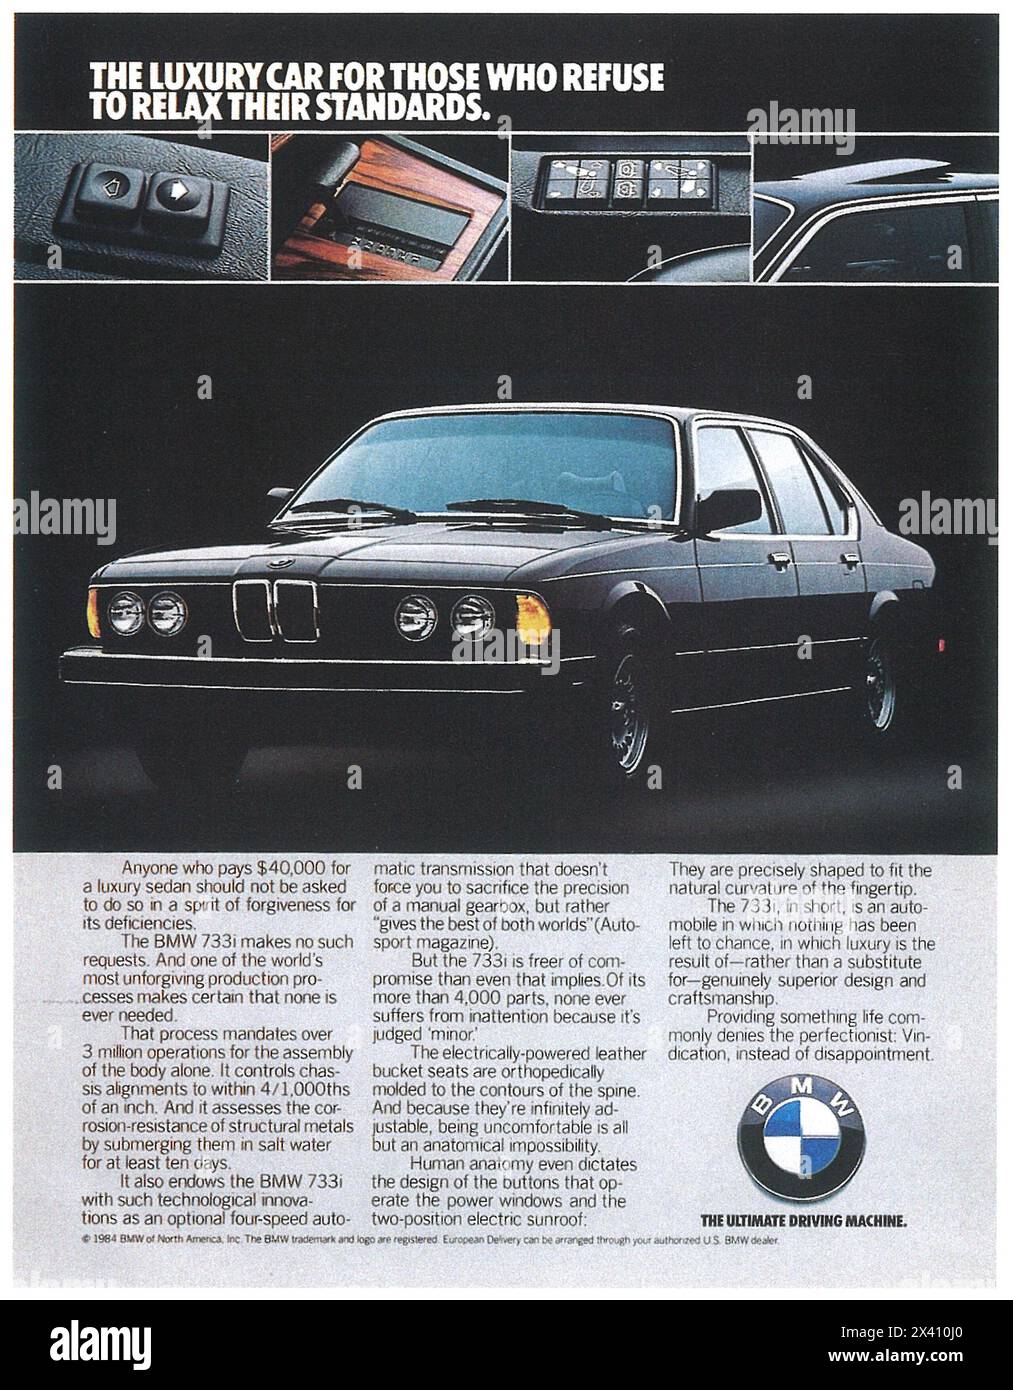 1984 BMW 733i Luxuslimousine – „für diejenigen, die sich weigern, ihre Standards zu entspannen“ Stockfoto